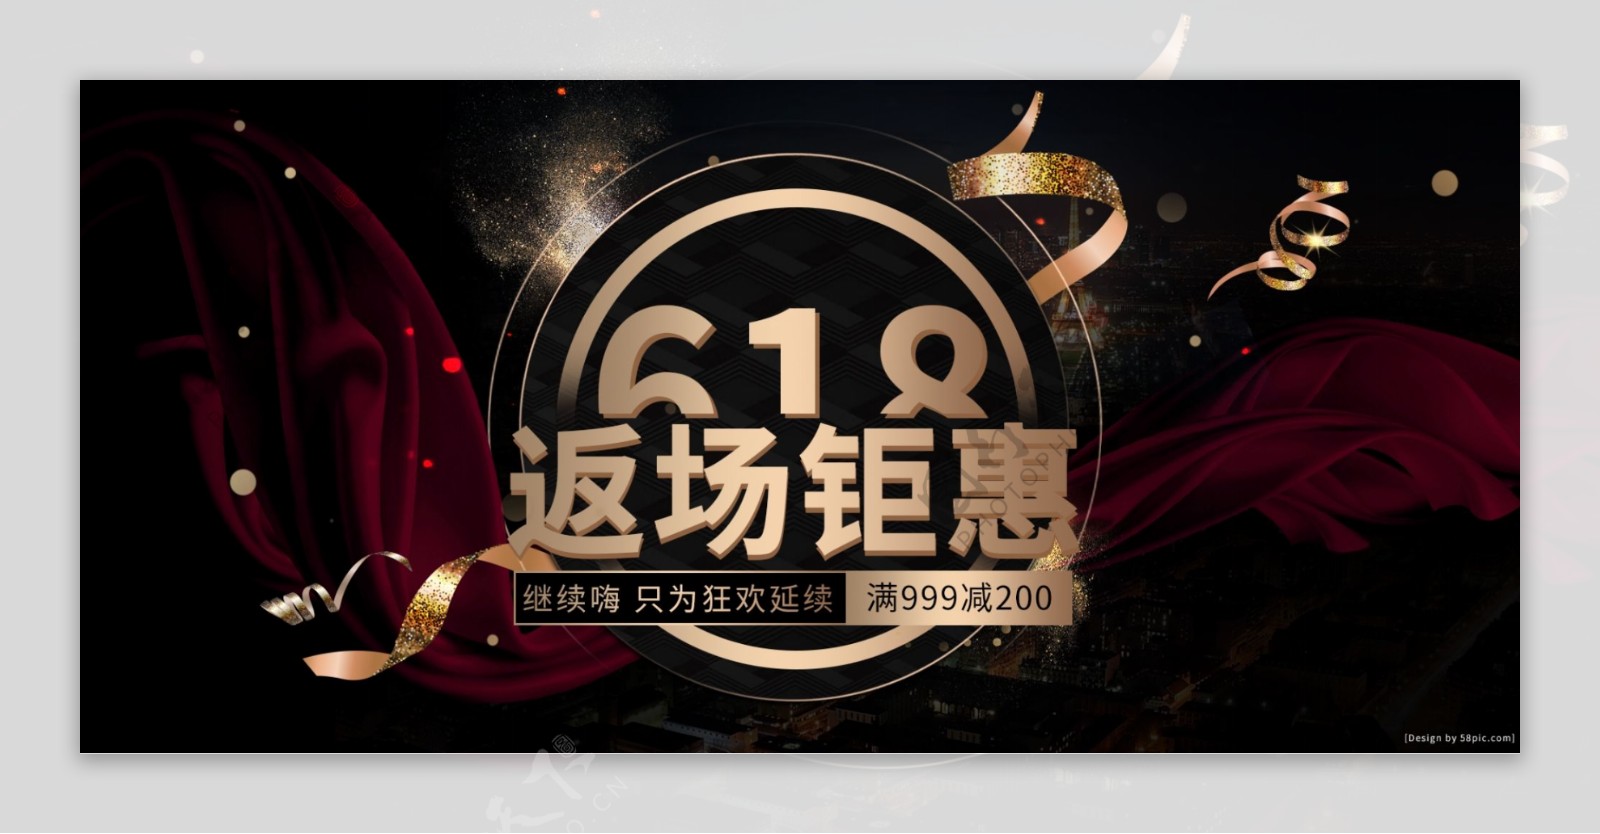 黑金炫酷奢侈品牌618狂欢季活动促销海报